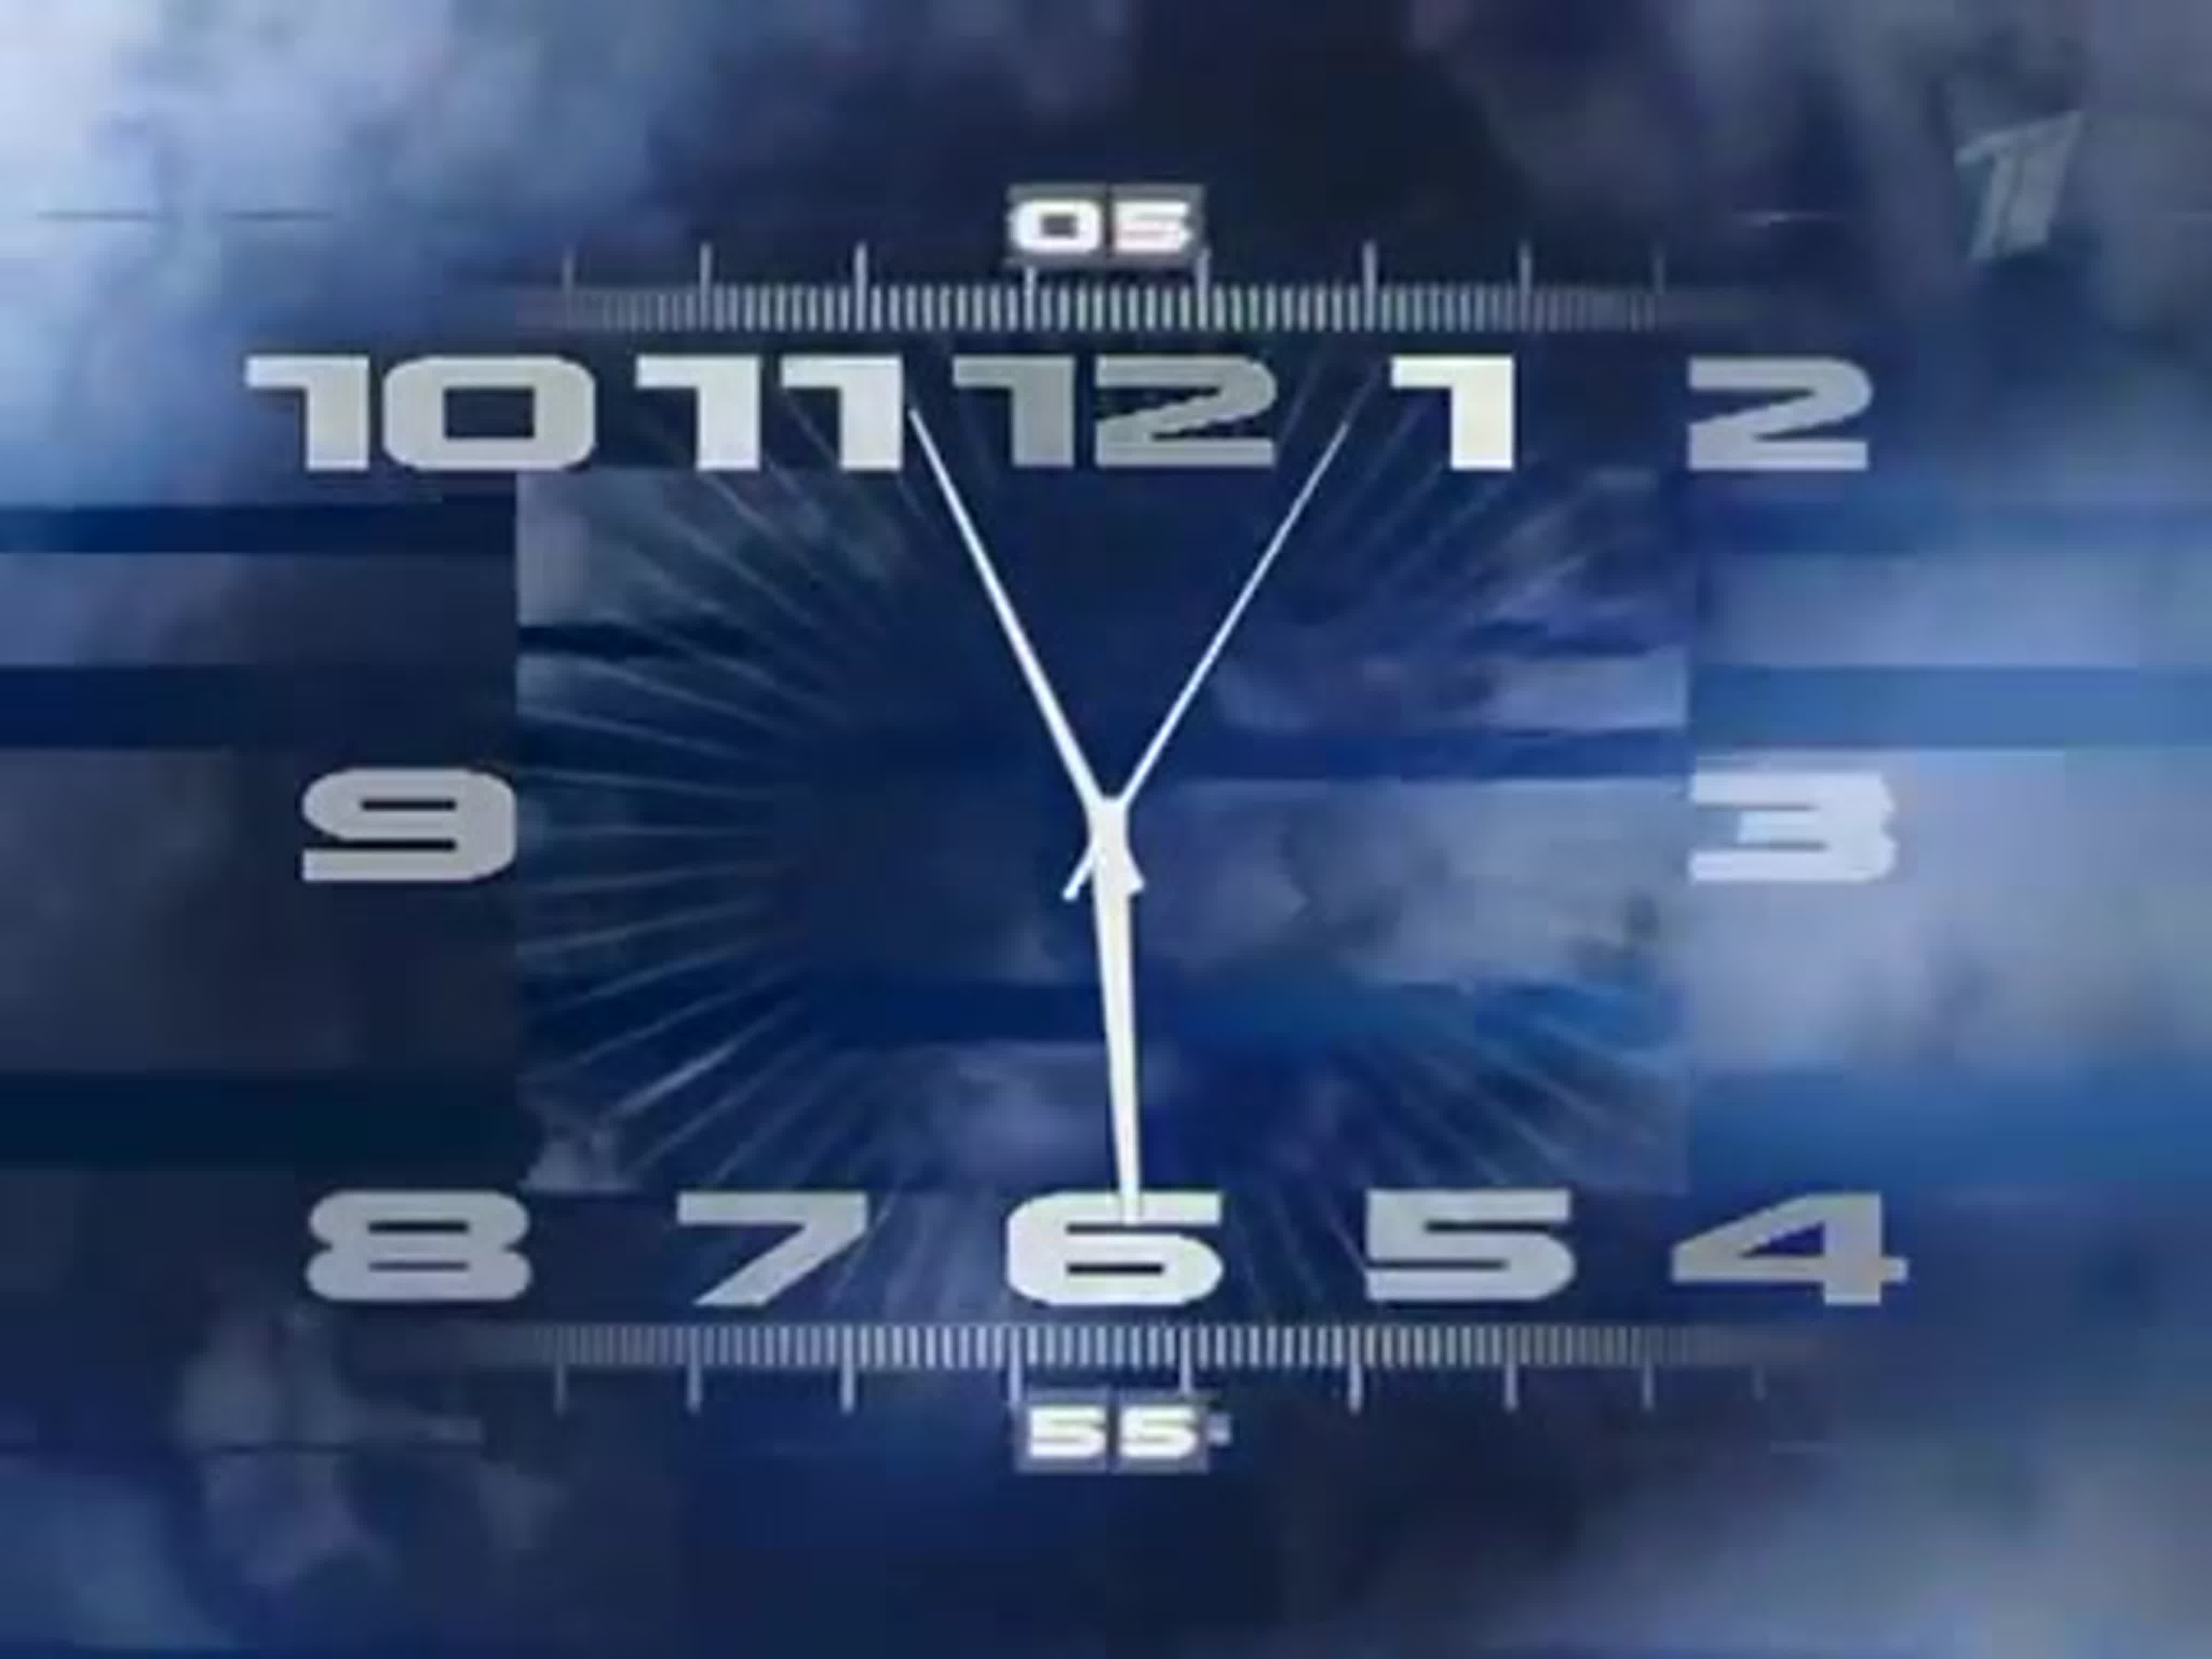 Включи часы с эффектами. Часы первого канала 2011. Часы ТВС со звуком часов 1 канала. Часы первого канала 2000-2011. Часы первого канала оригинал.